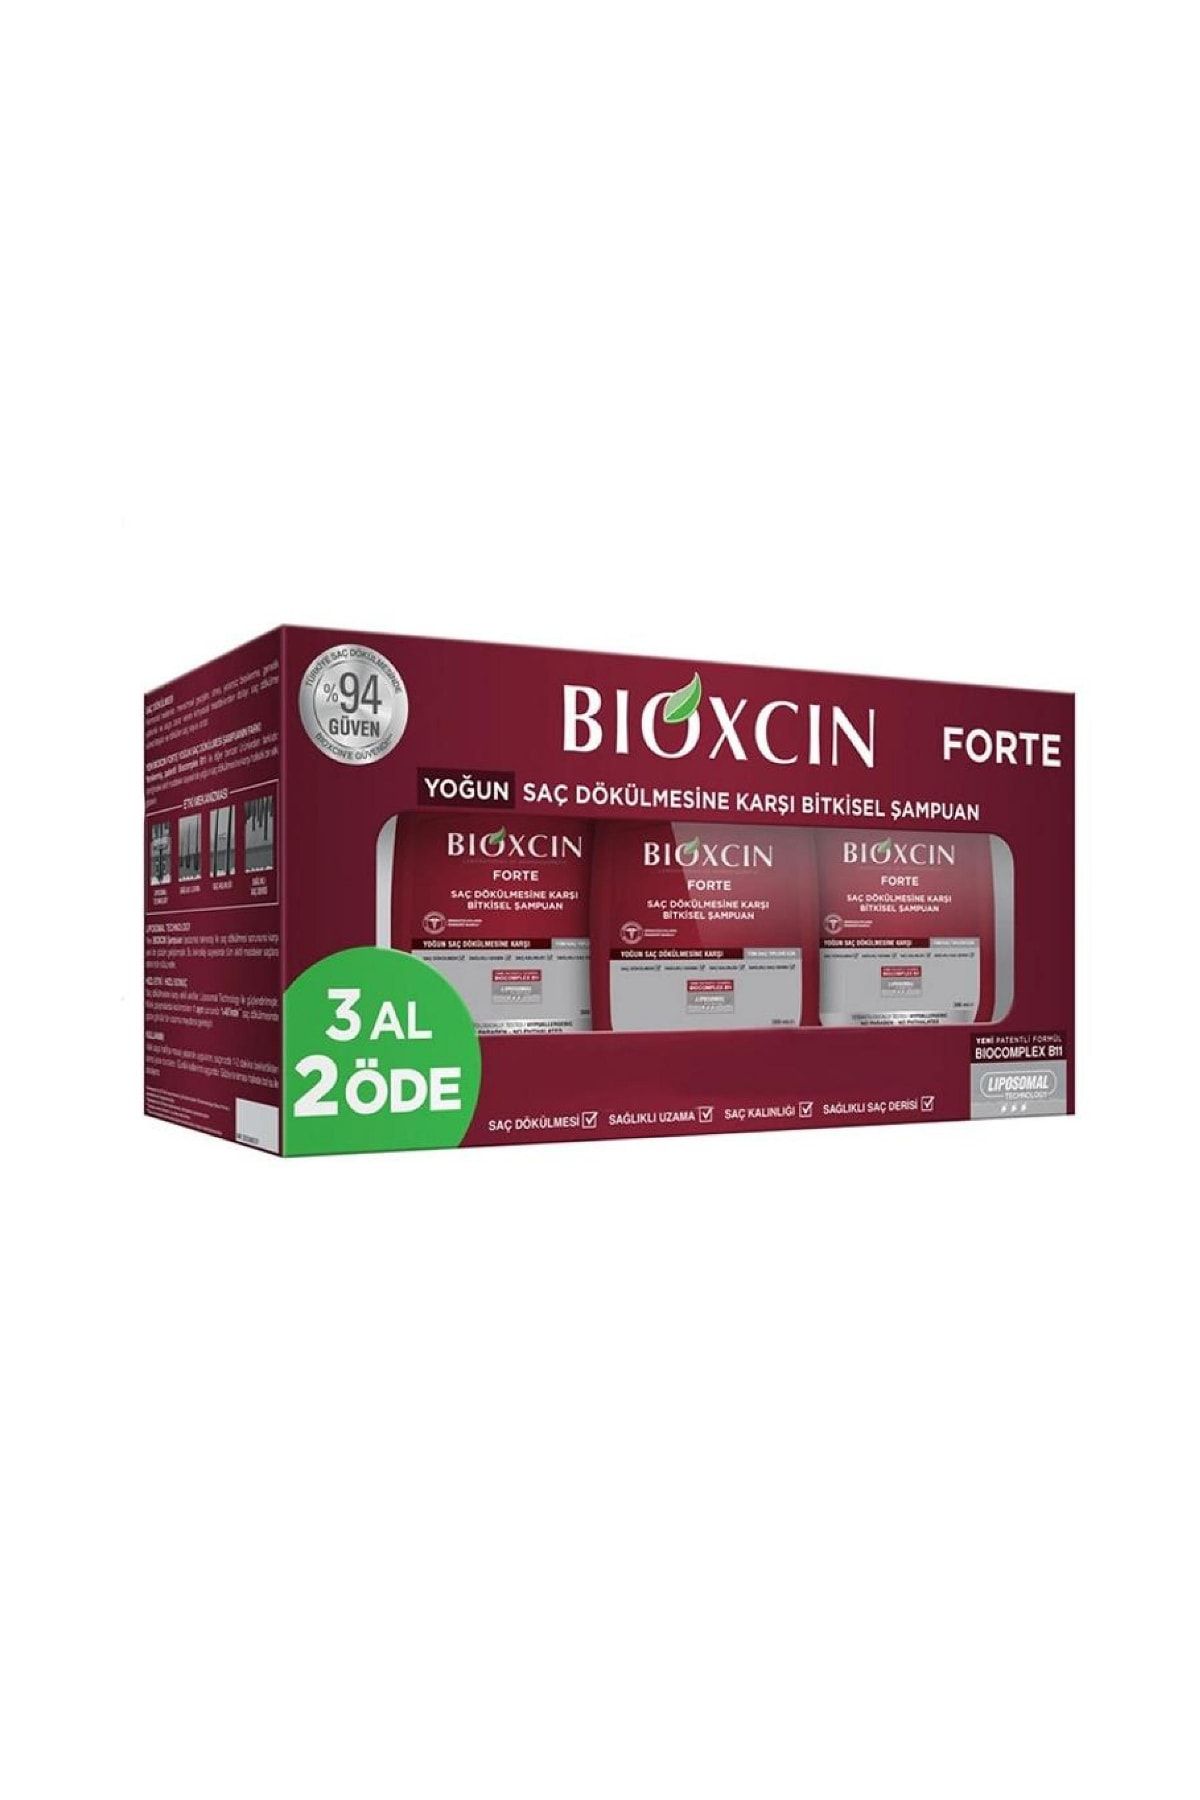 Bioxcin Forte Saç Dökülmesine Karşı Bakım Şampuanı 300 Ml - 3 Al 2 Öde